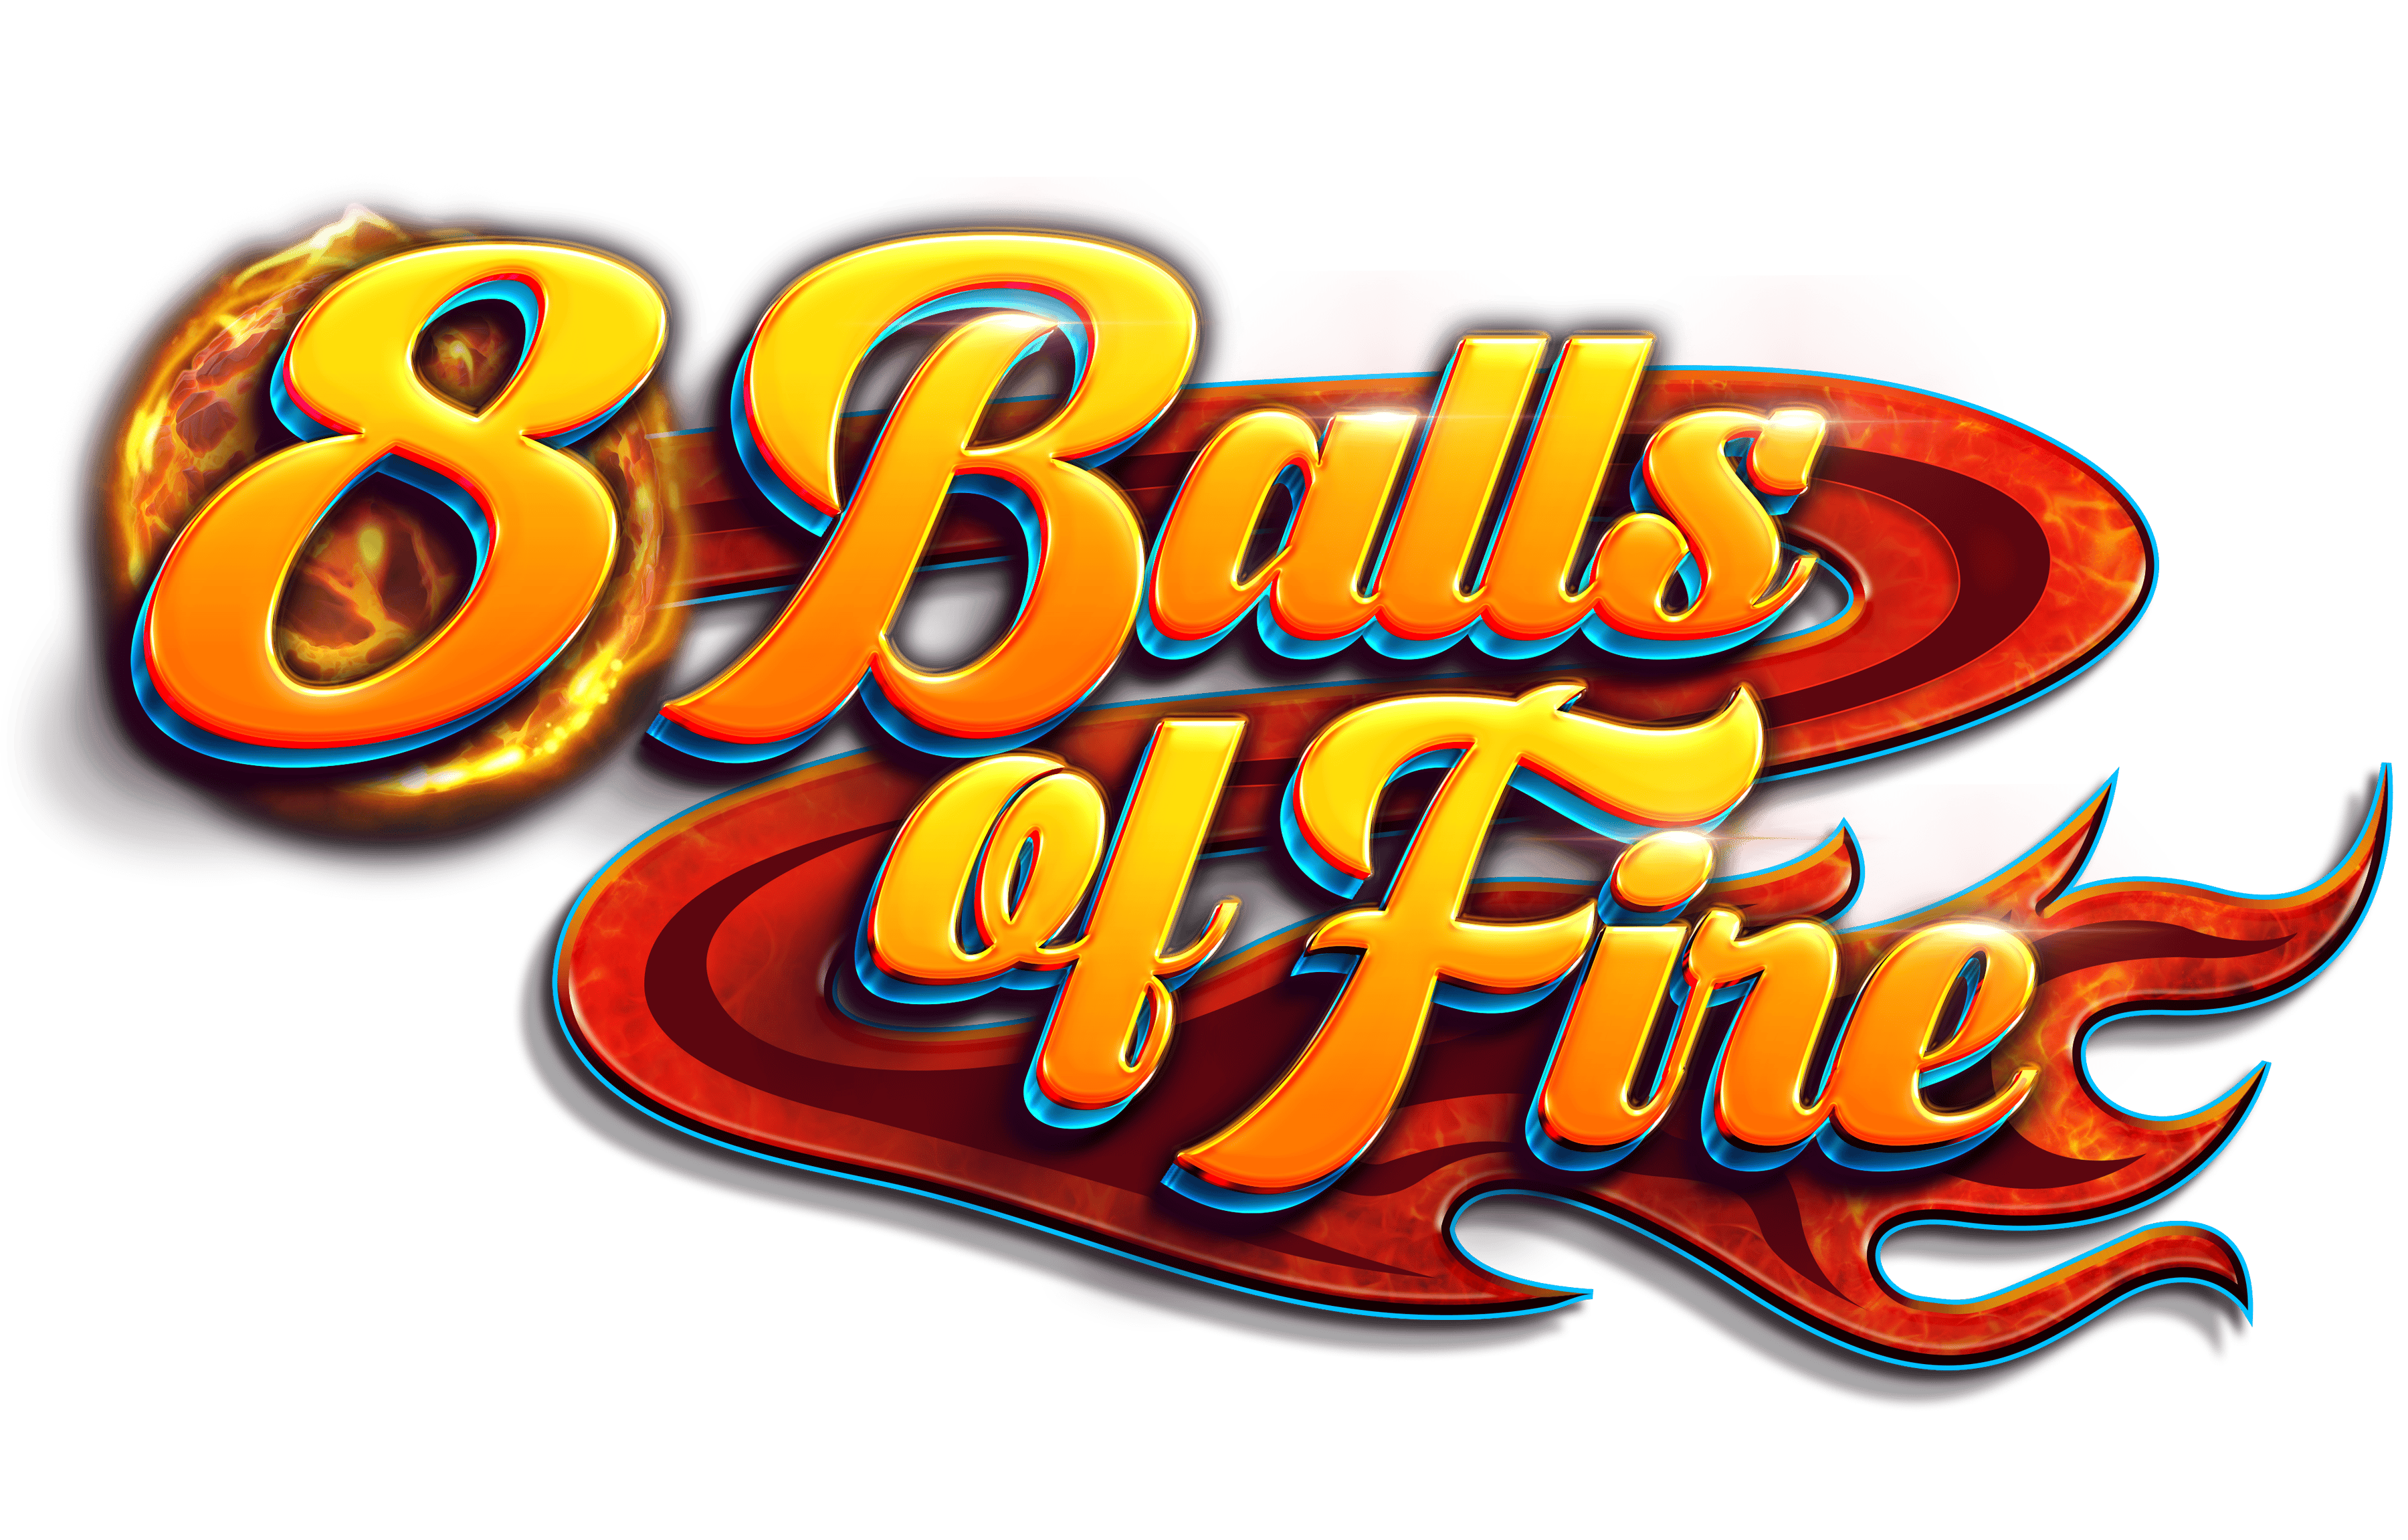 8 Balls of Fire